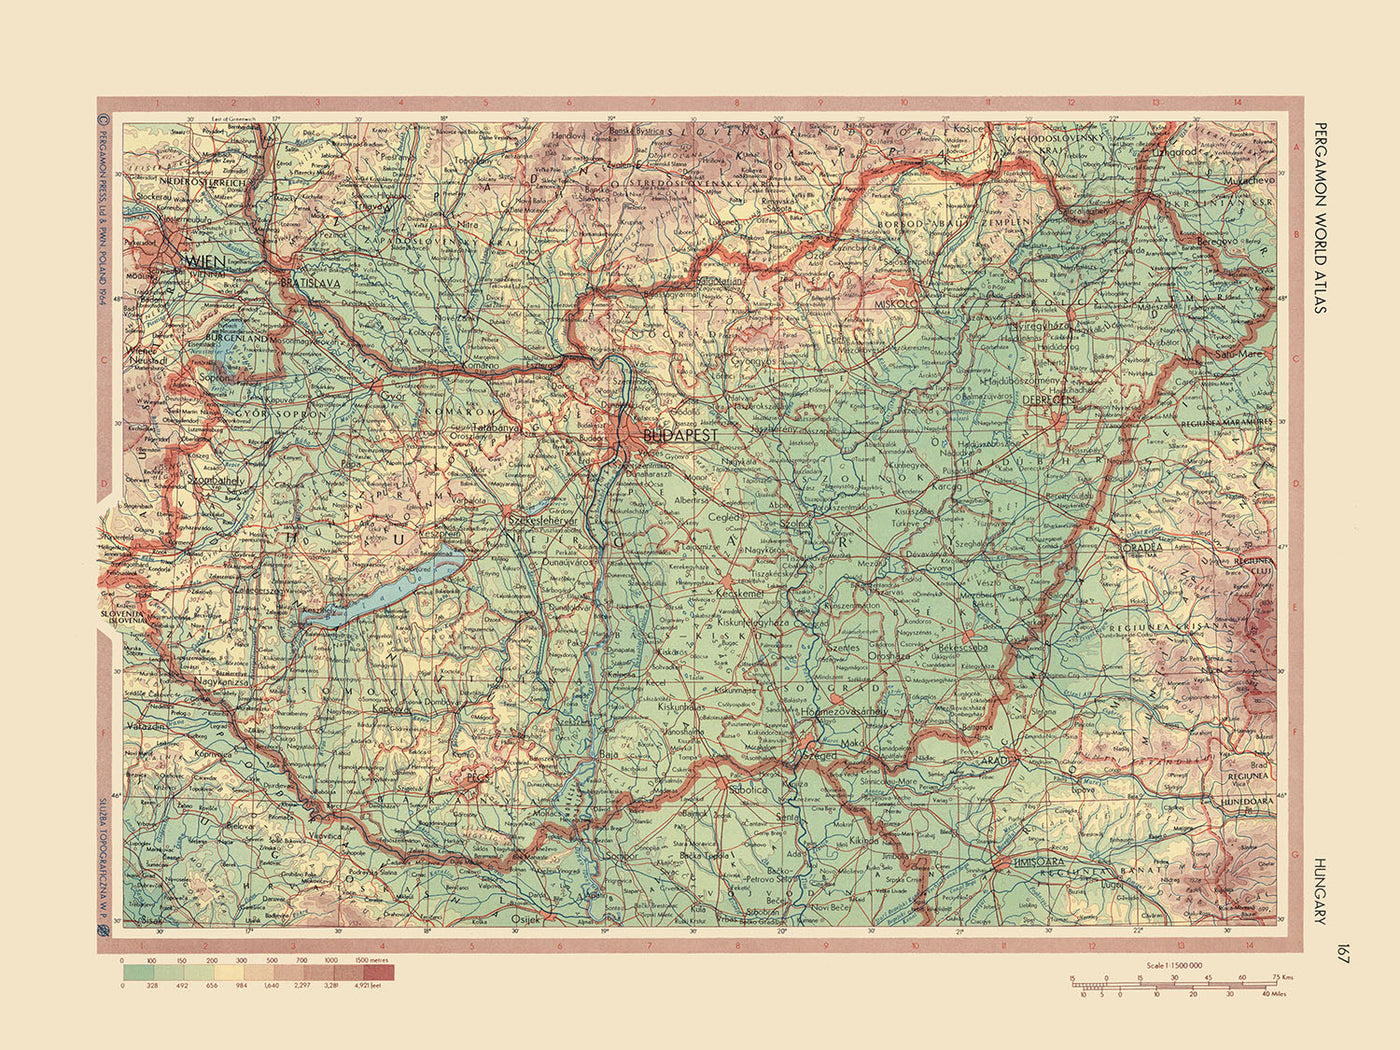 Ancienne carte de la Hongrie, 1967 : Budapest, Danube, lac Balaton, grande plaine hongroise, montagnes Mátra